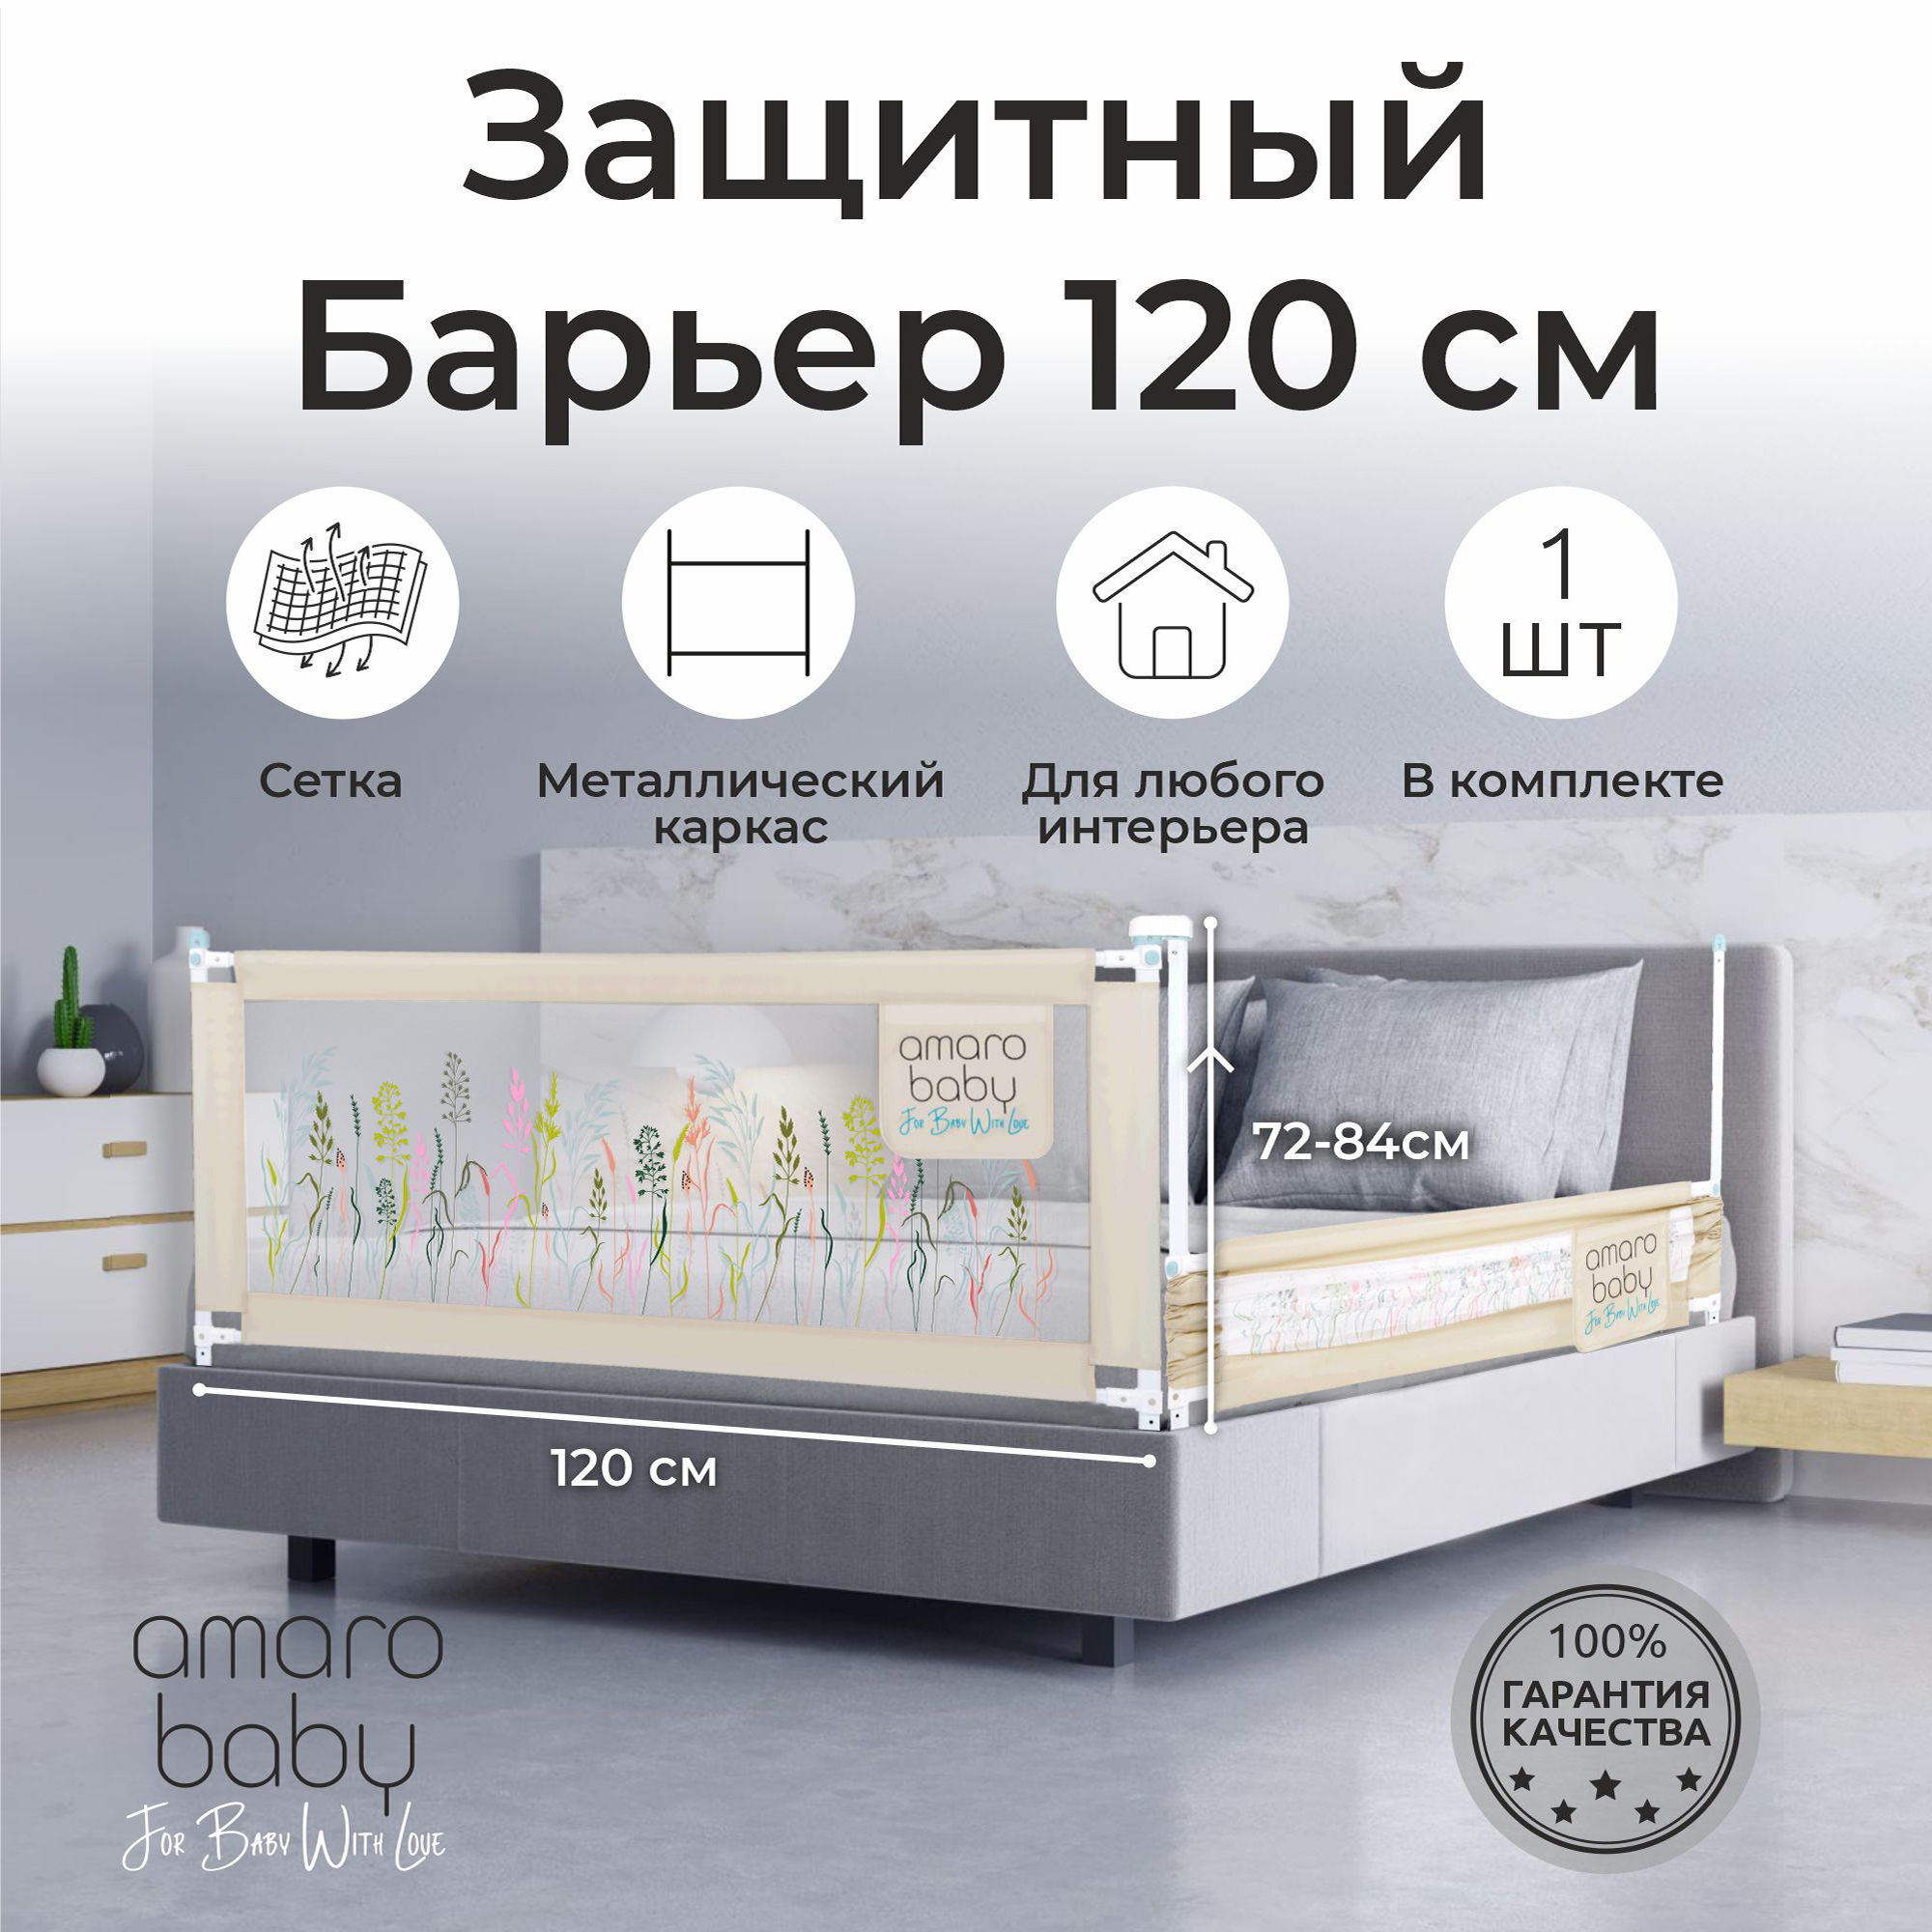 Барьер защитный для кровати AMAROBABY safety of dreams, 120 см, ограничитель-безопасности